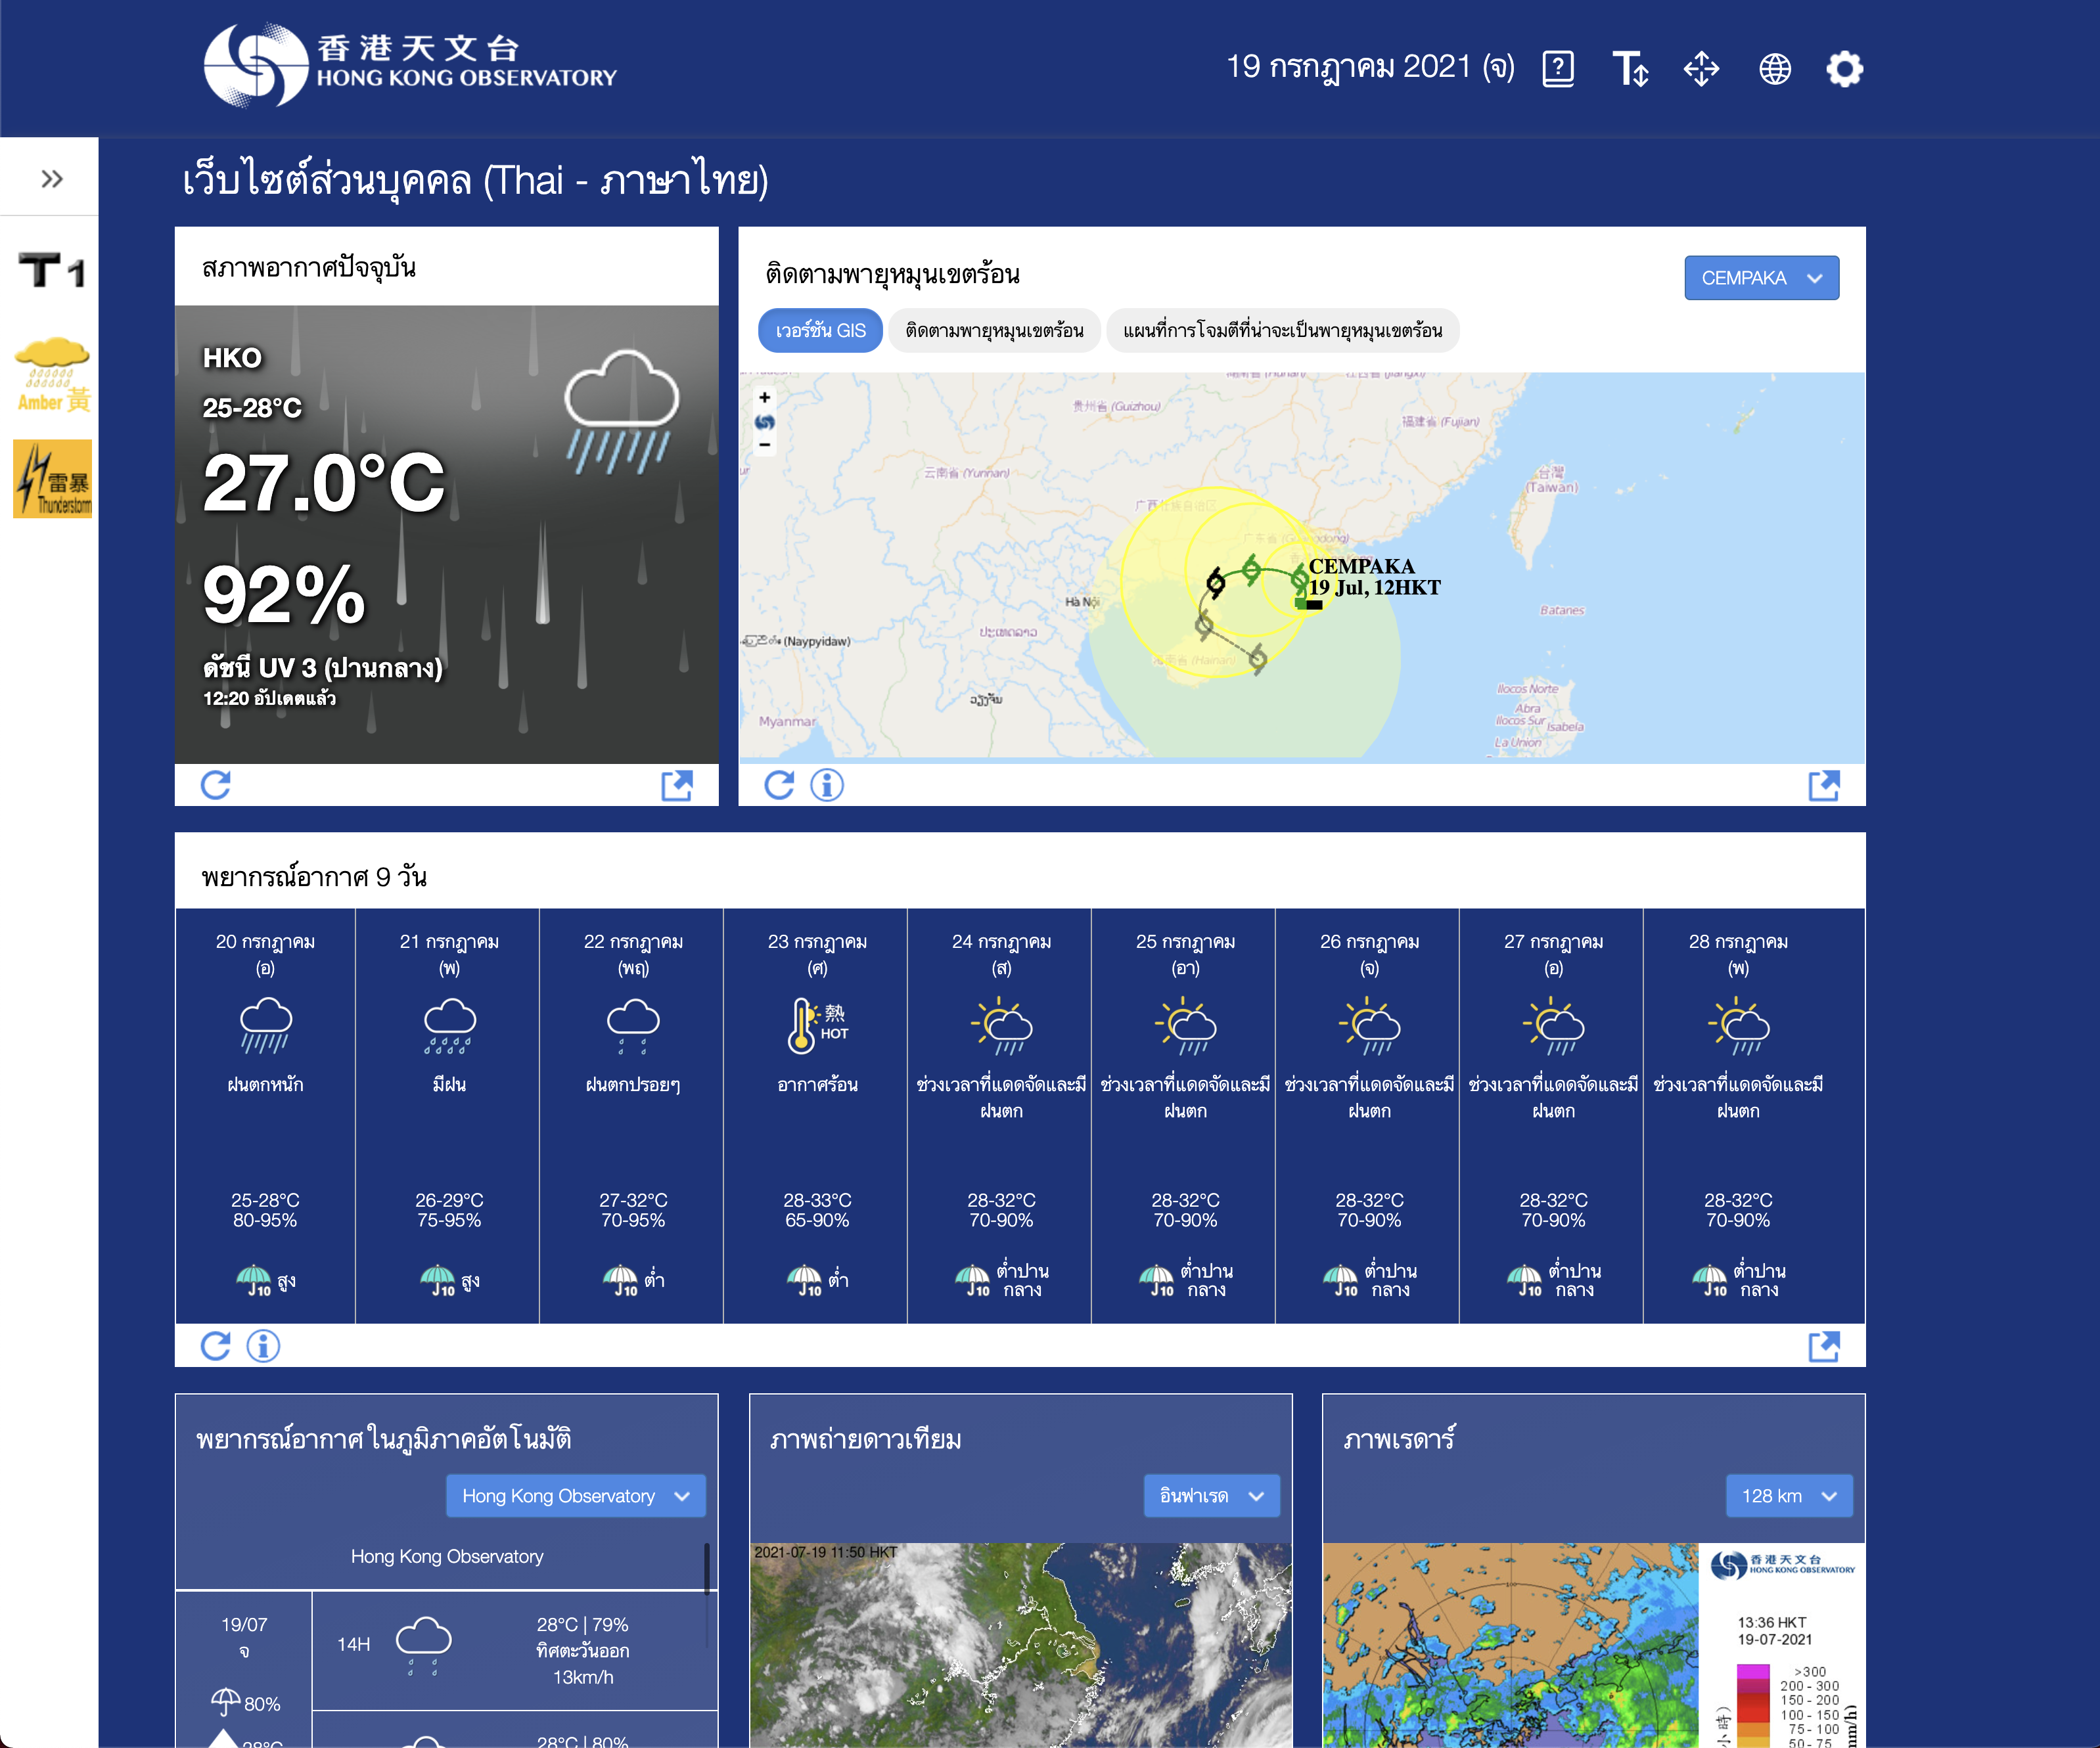 全新個人版天氣網站 加強少數族裔天氣資訊服務